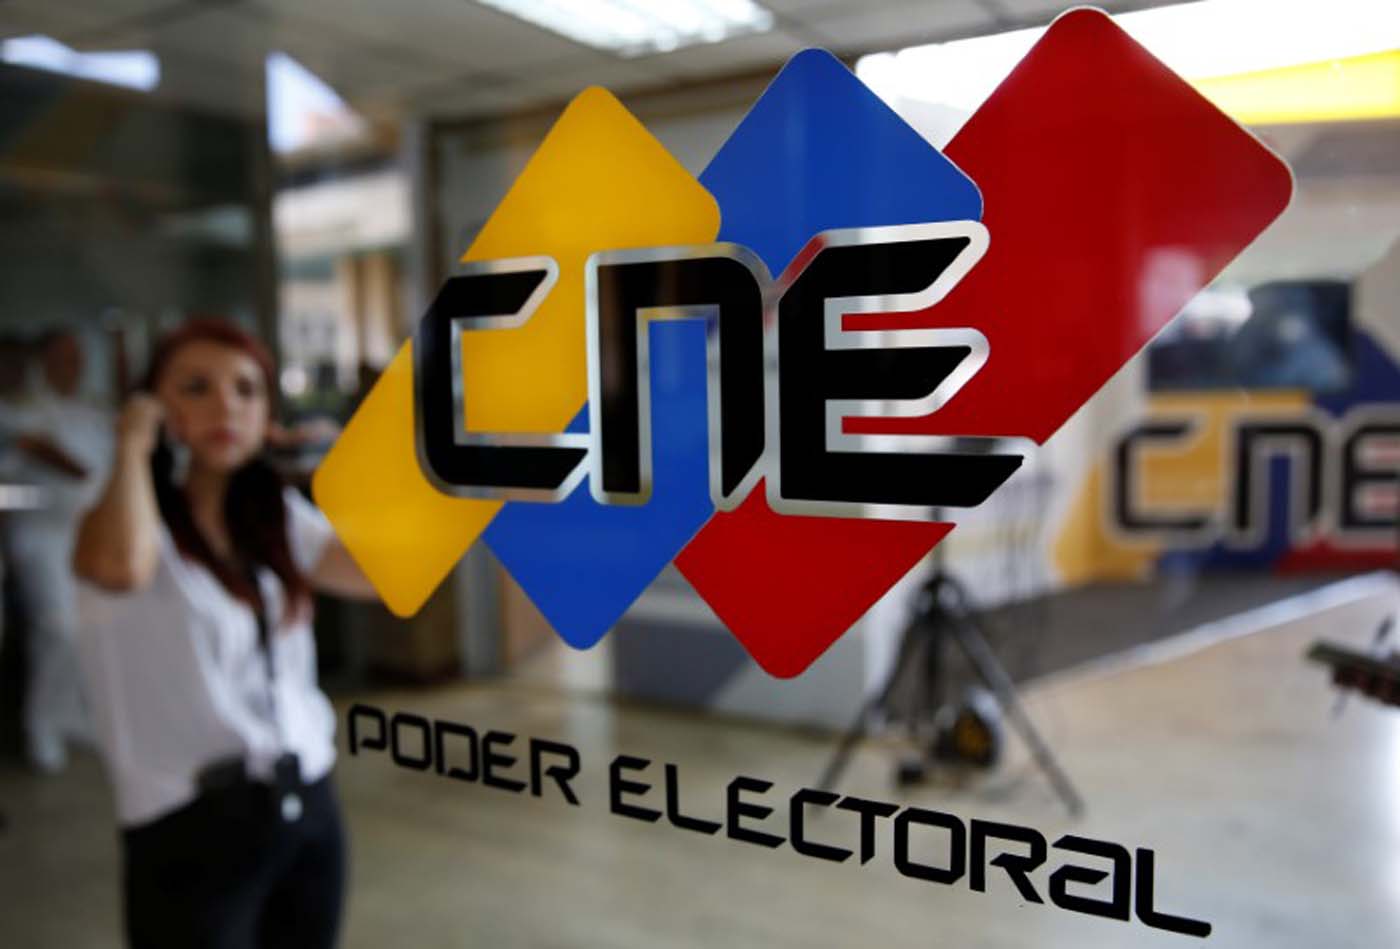 #RR2016: Chavismo democrático demanda al CNE que reanude el proceso de recolección de voluntades (documento)